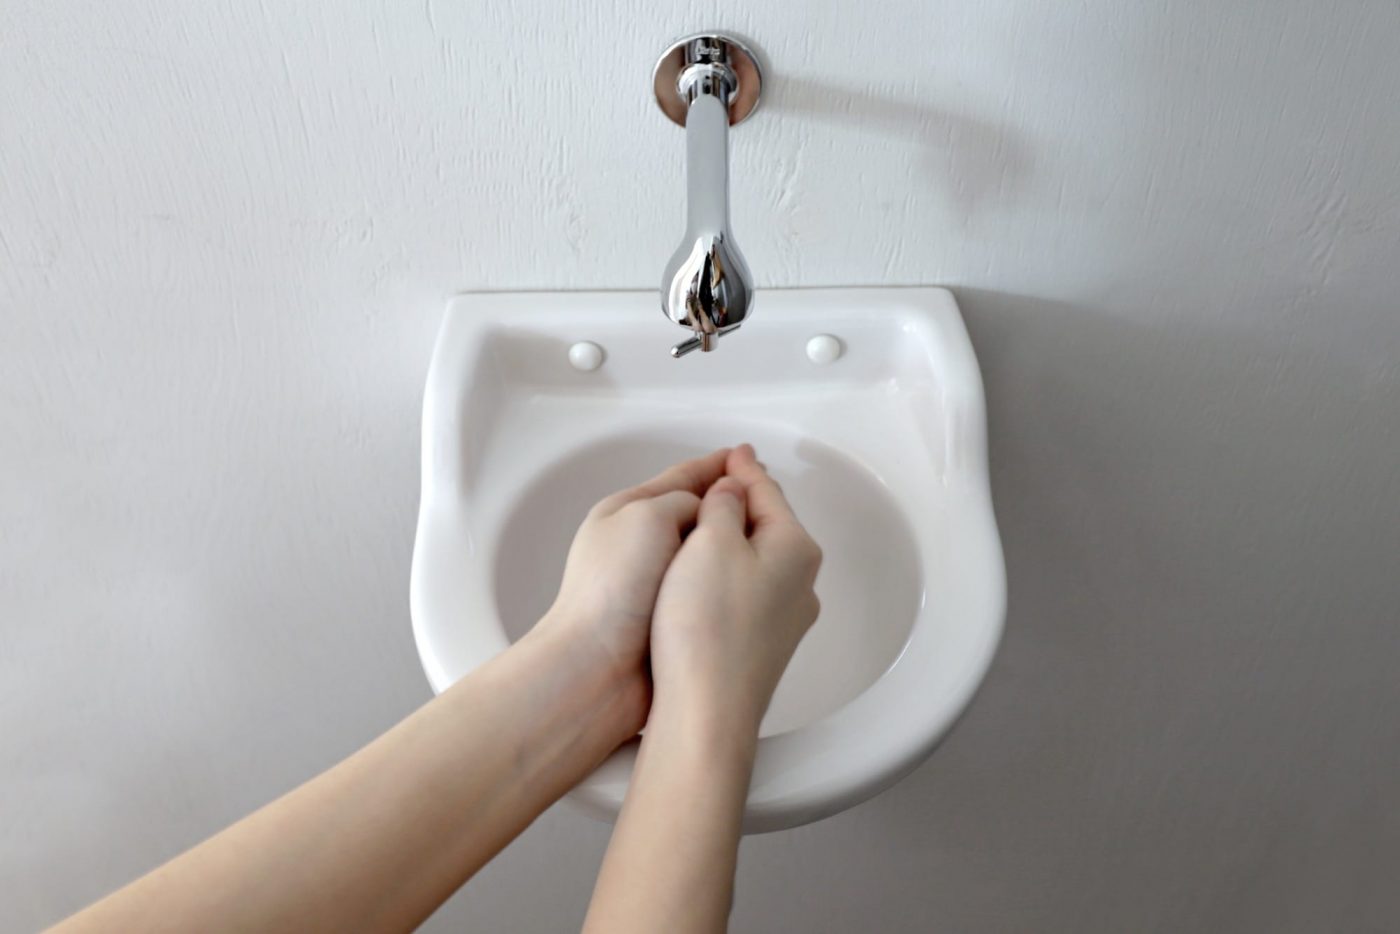 <p>「手を洗う」という行為に応える最低限のサイズ。</p>
